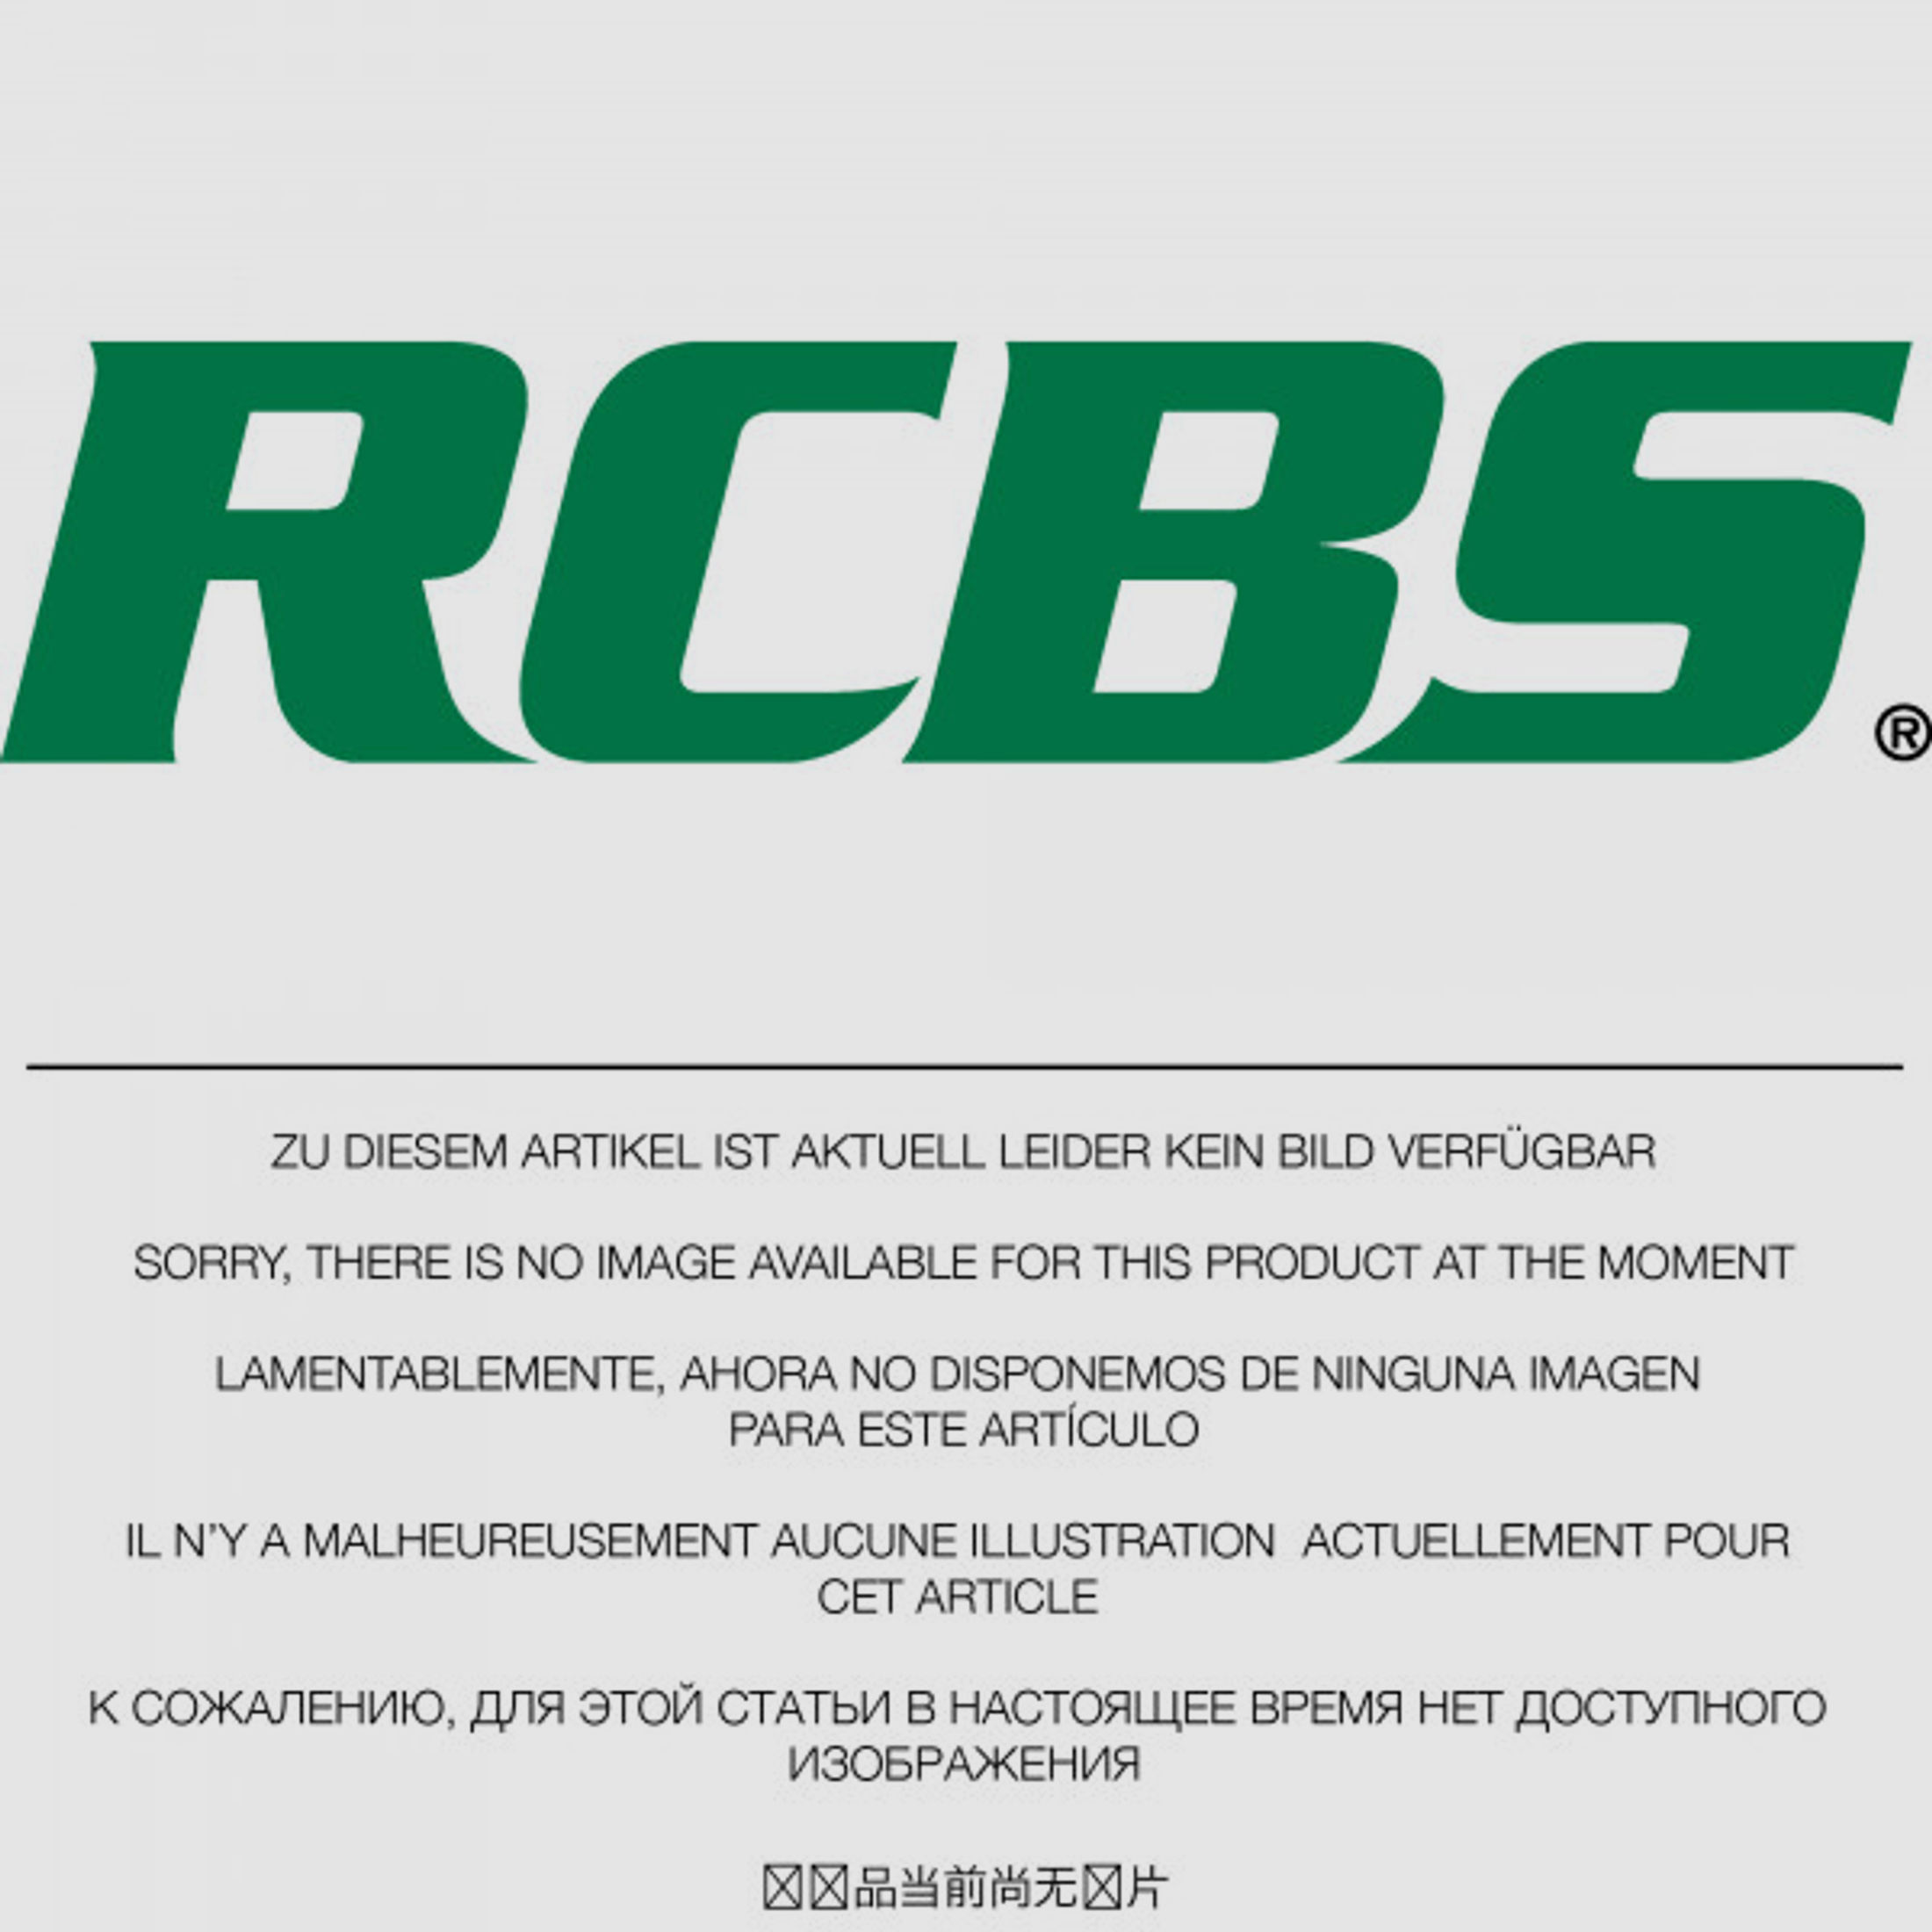 RCBS Lube-A-Matic Top Punch Geschoss Setzstempel Nr. 635 #85635